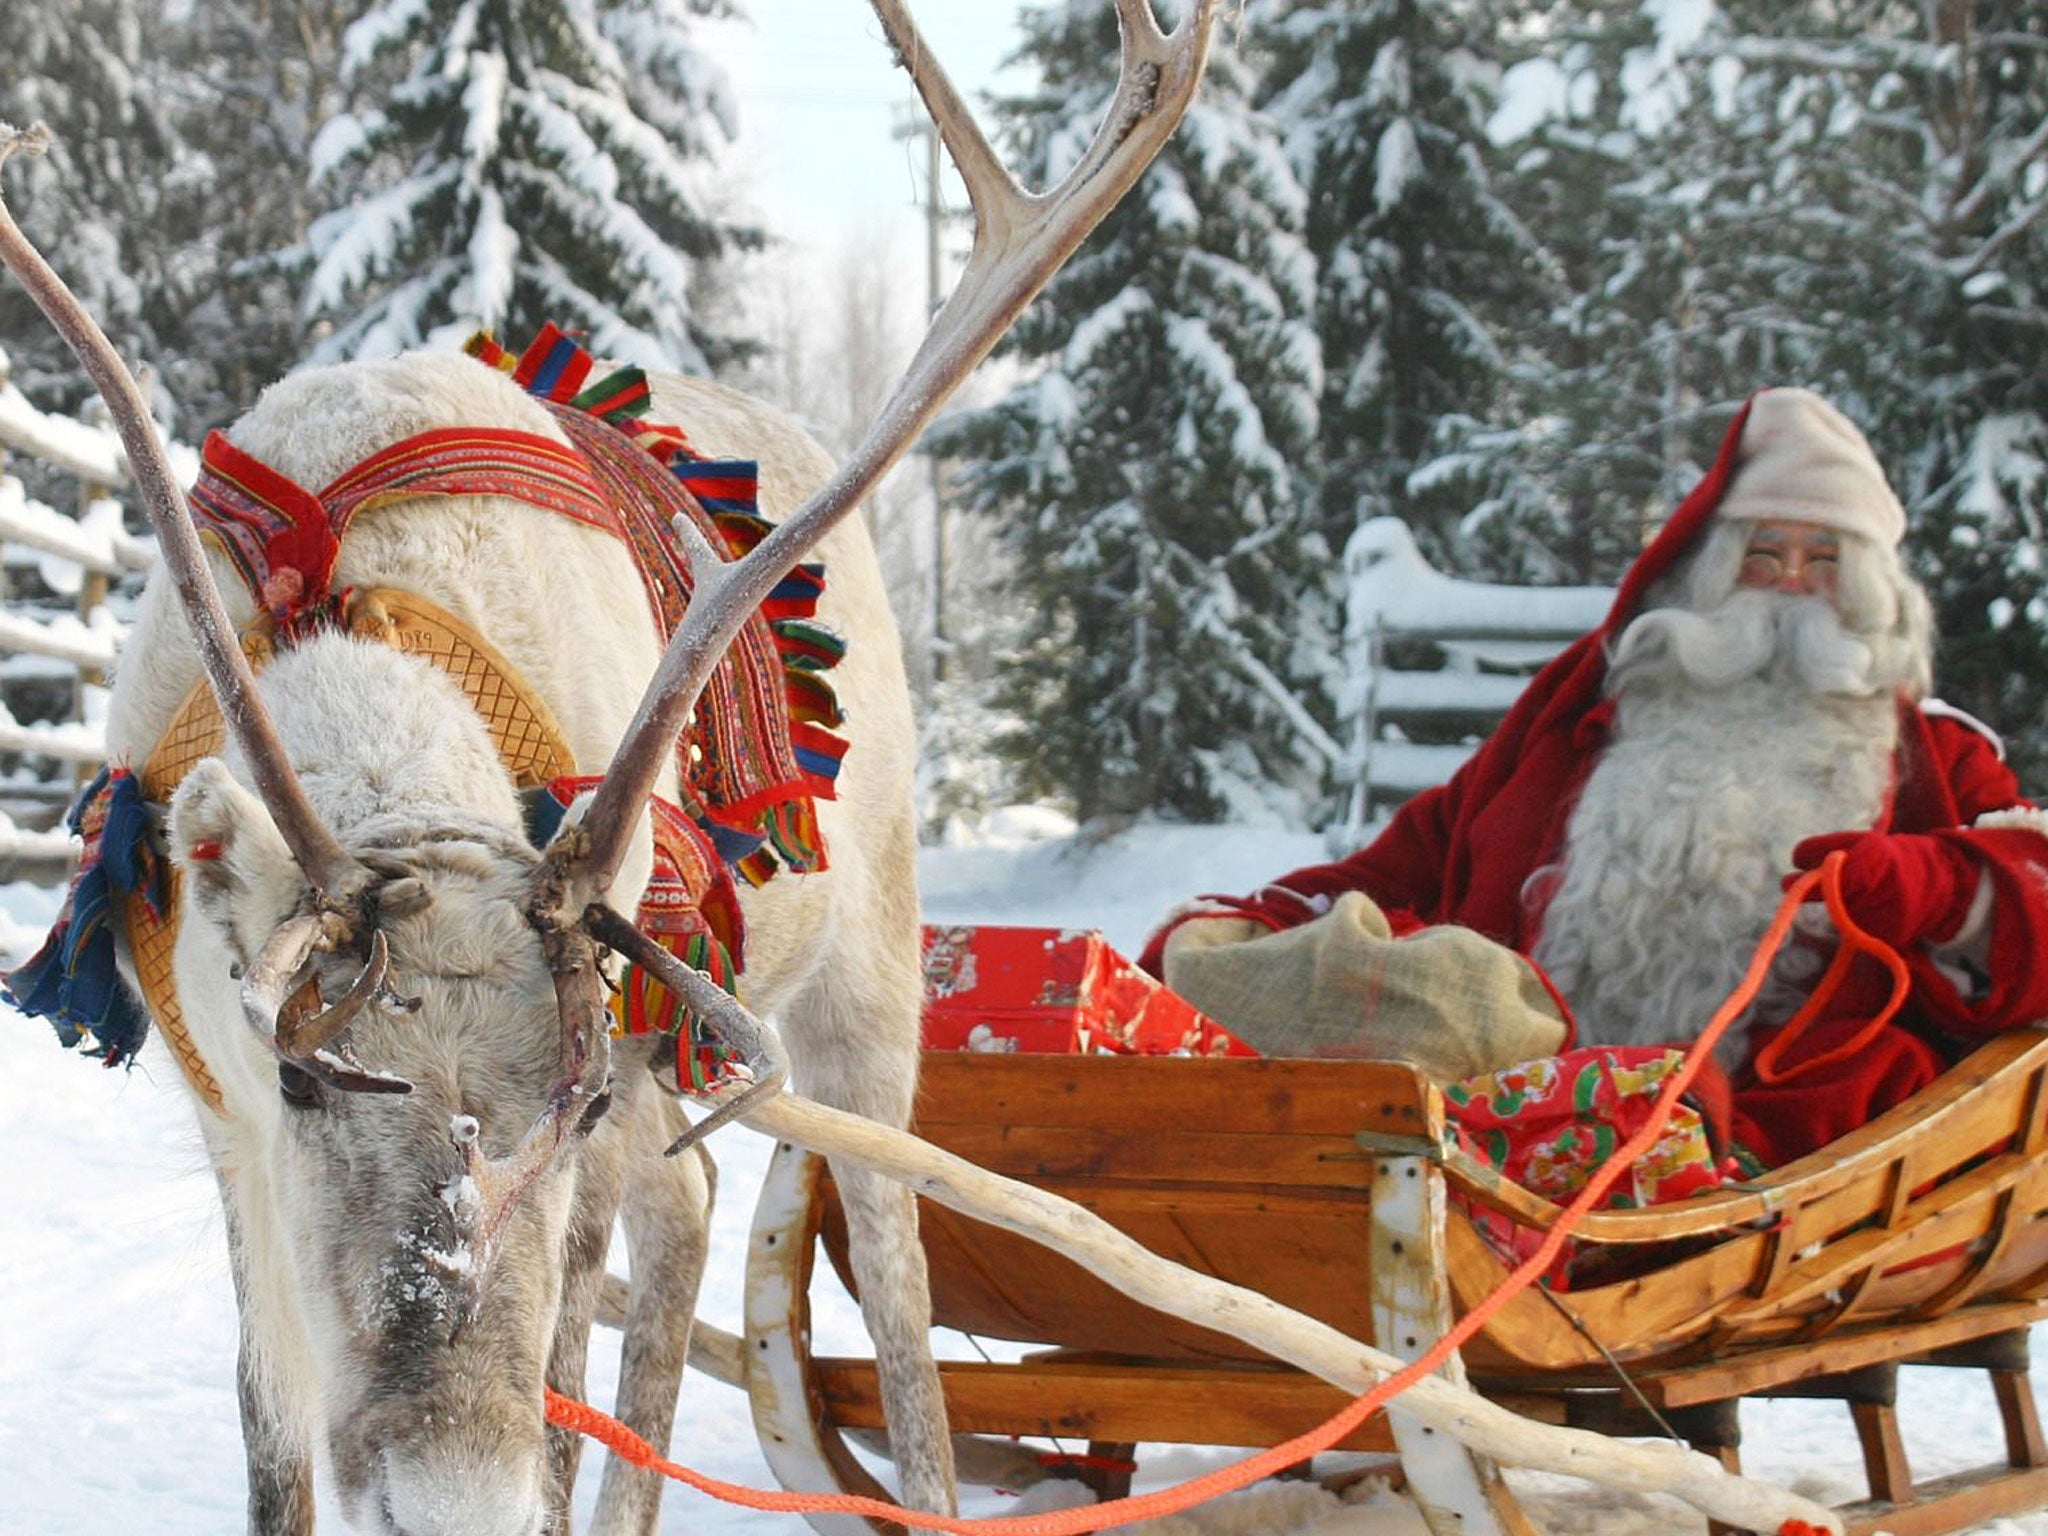 On the hoof: Santa and his reindeer in Lapland